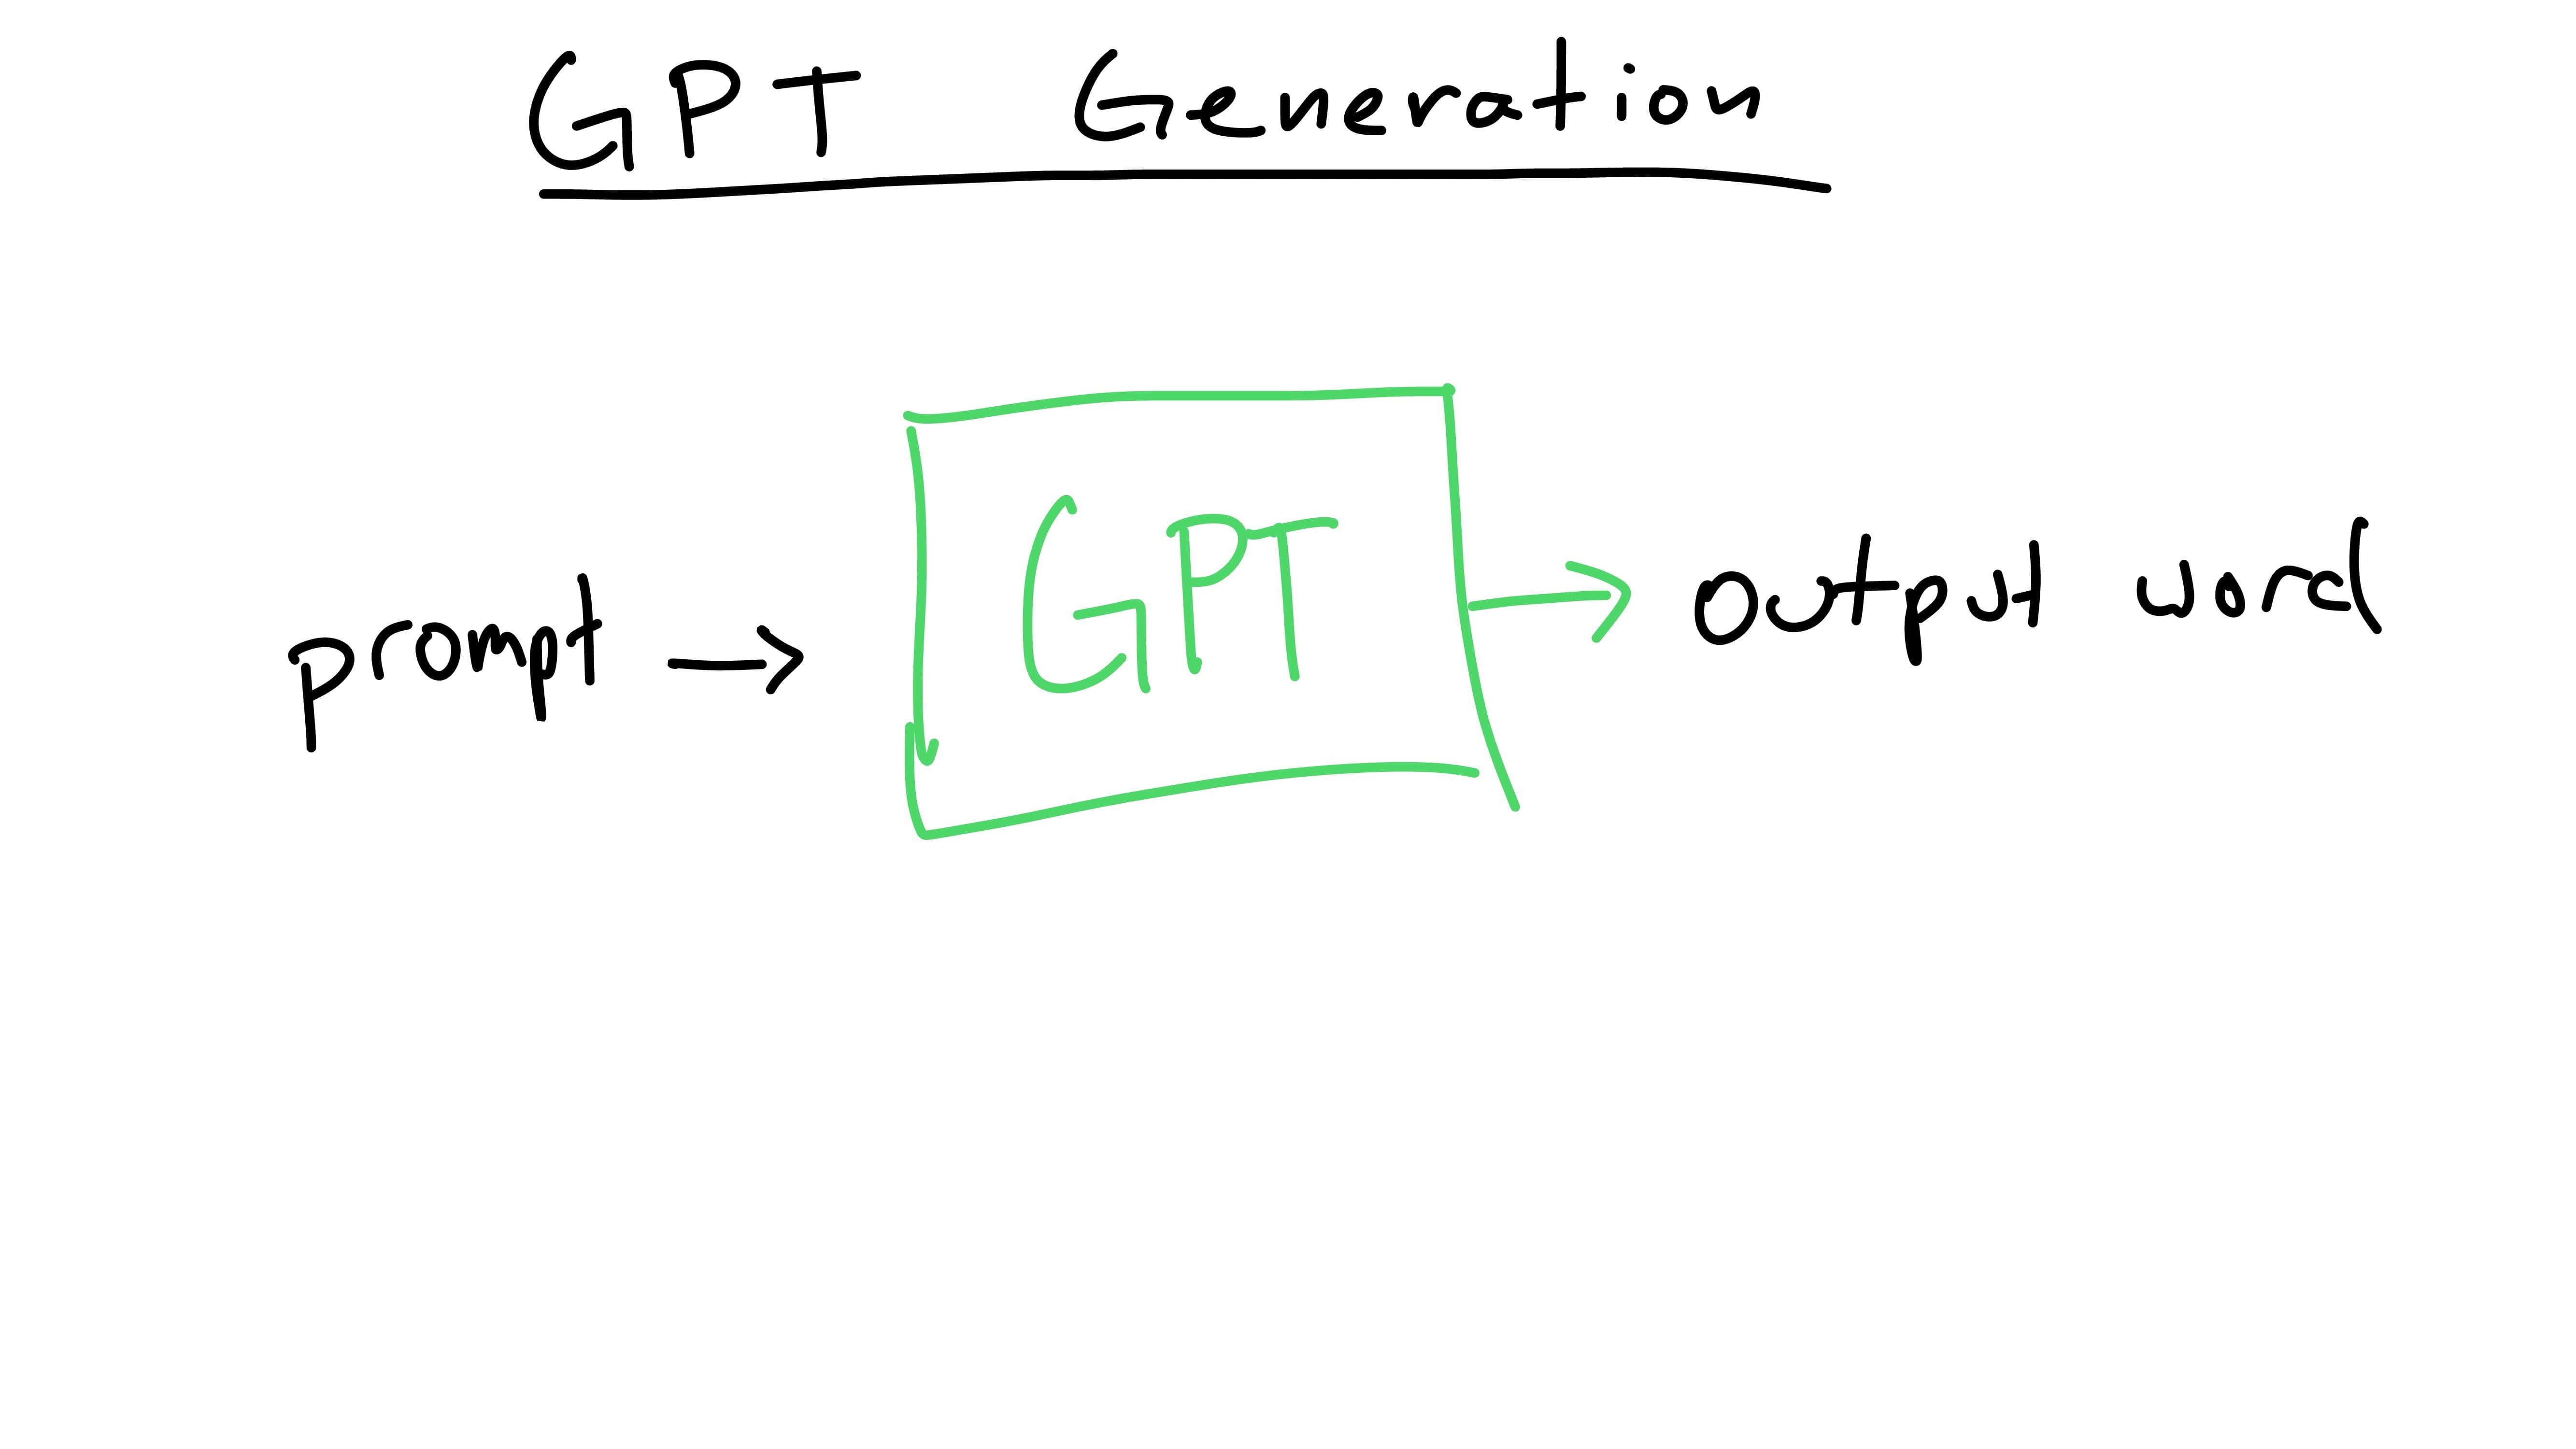 GPT model